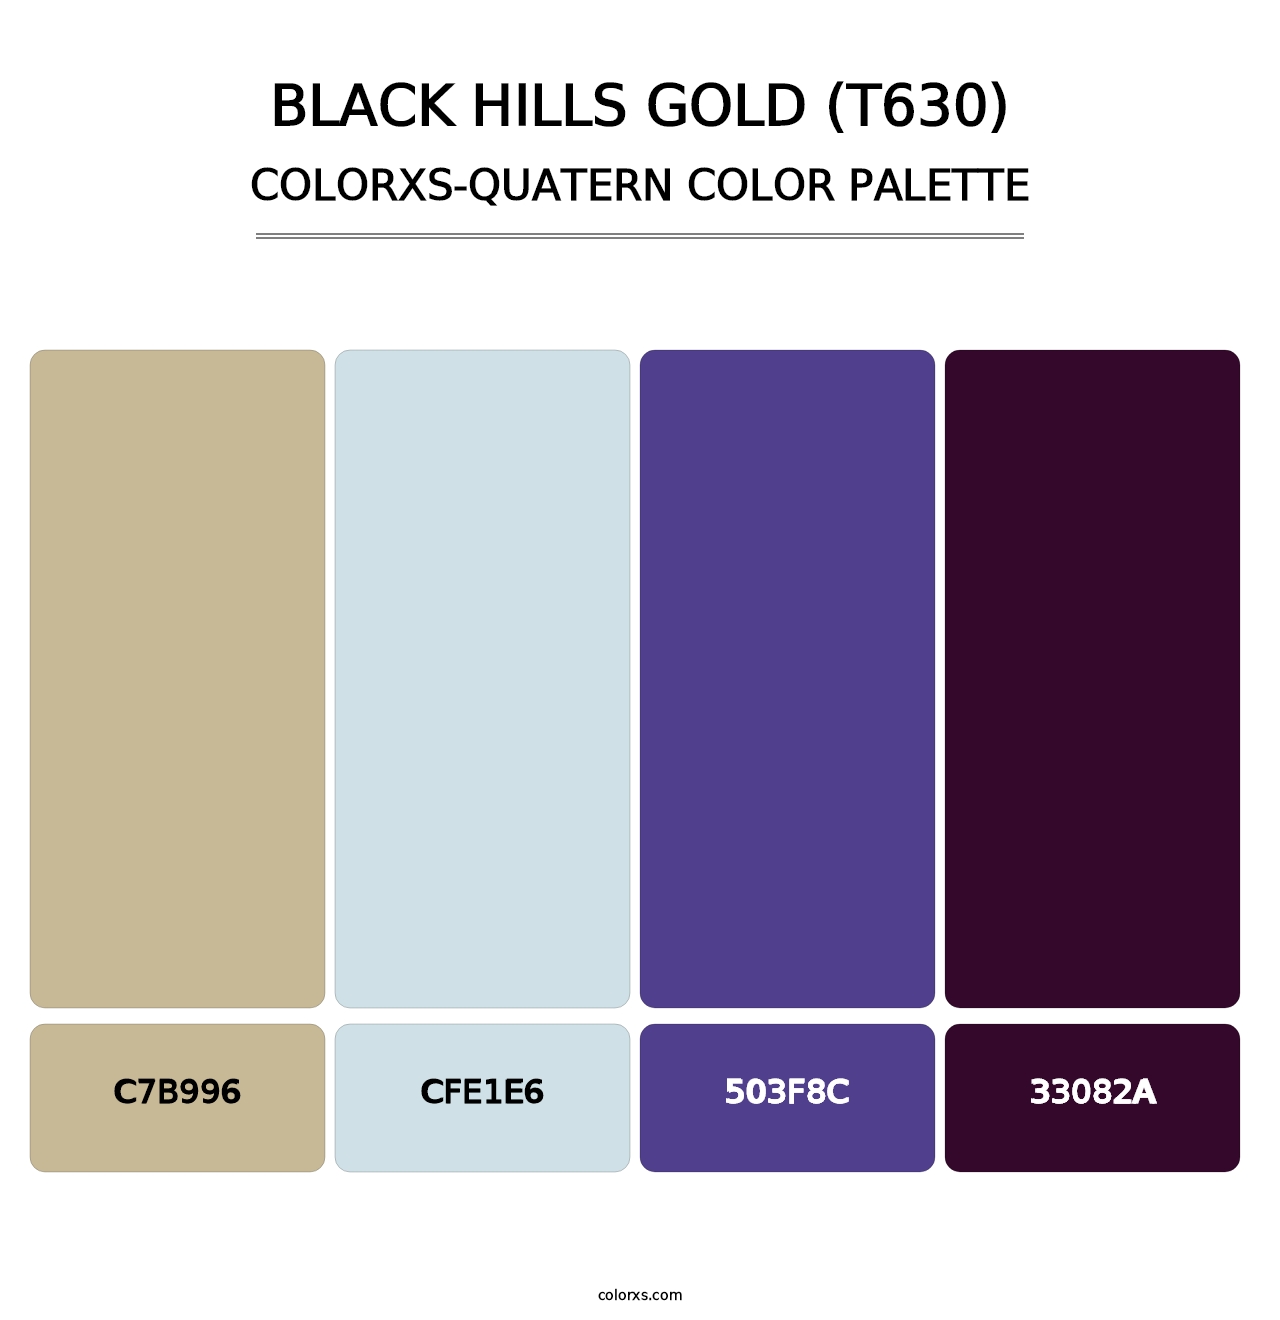 Black Hills Gold (T630) - Colorxs Quatern Palette